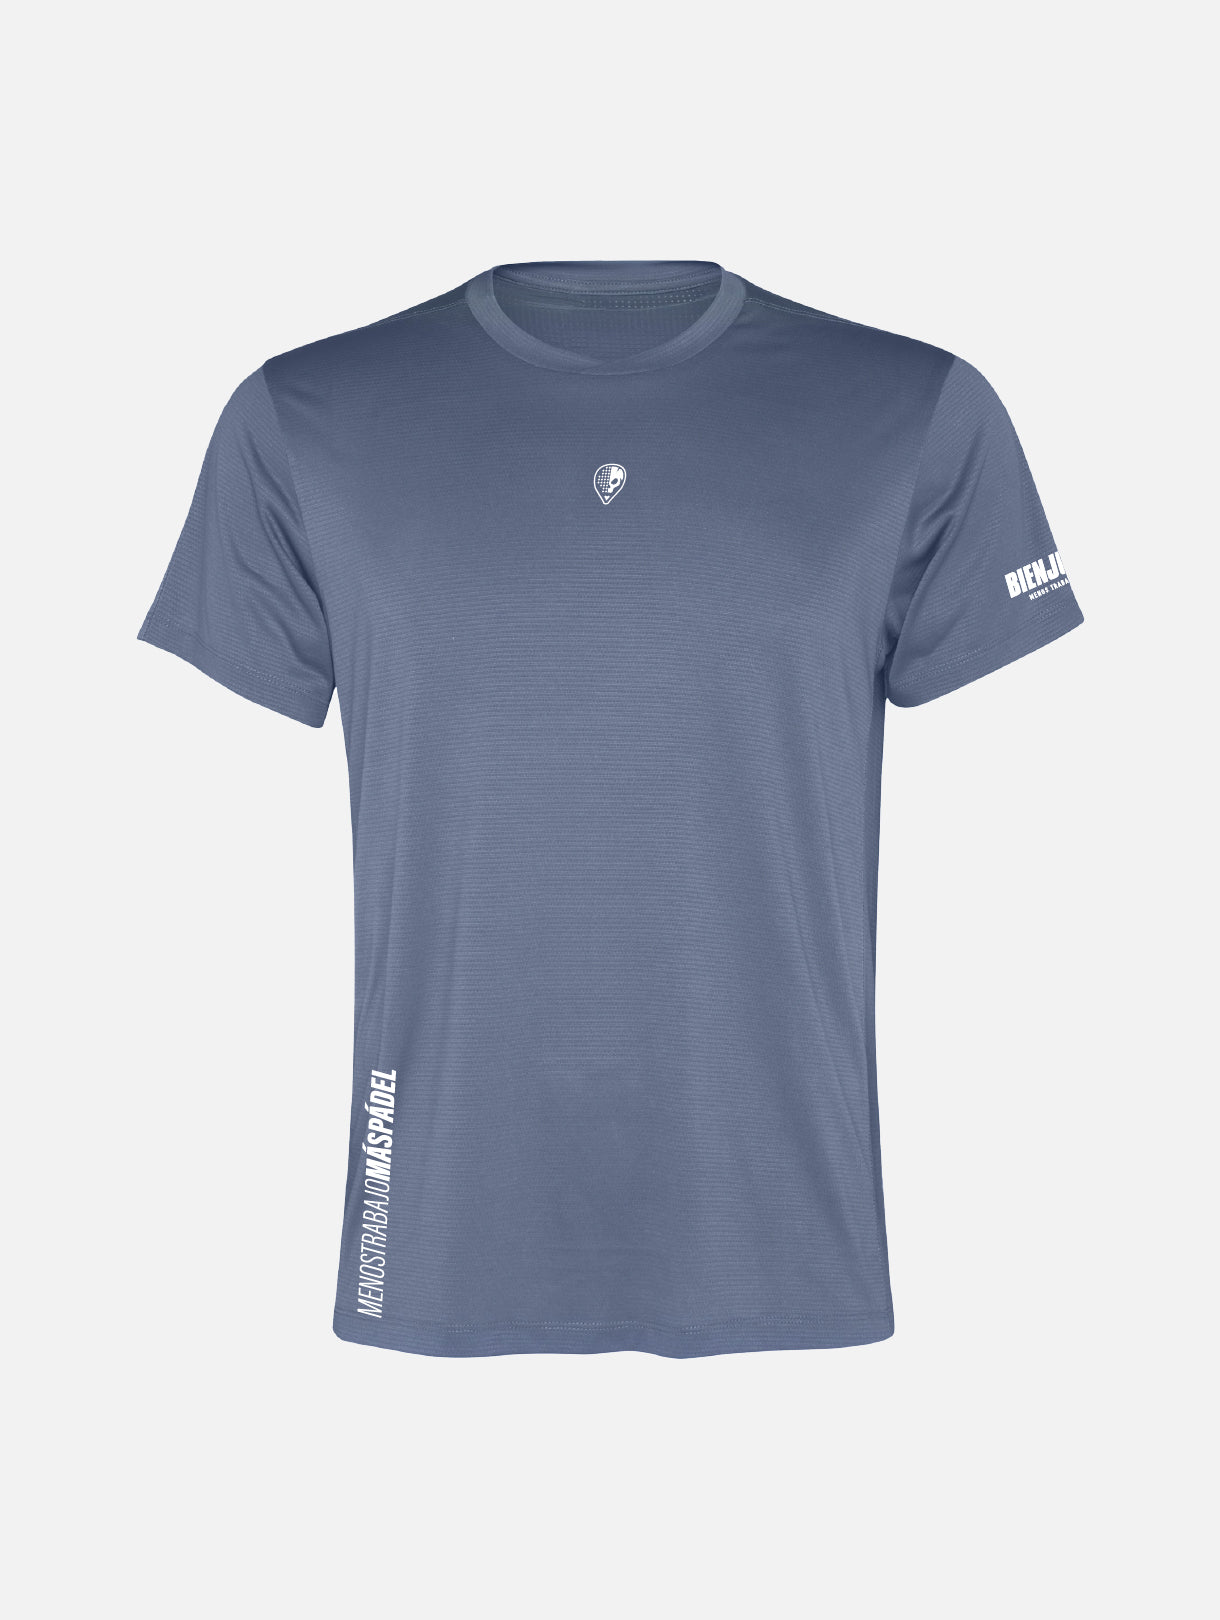 Breezy Augustìn T-shirt - Zen Blue